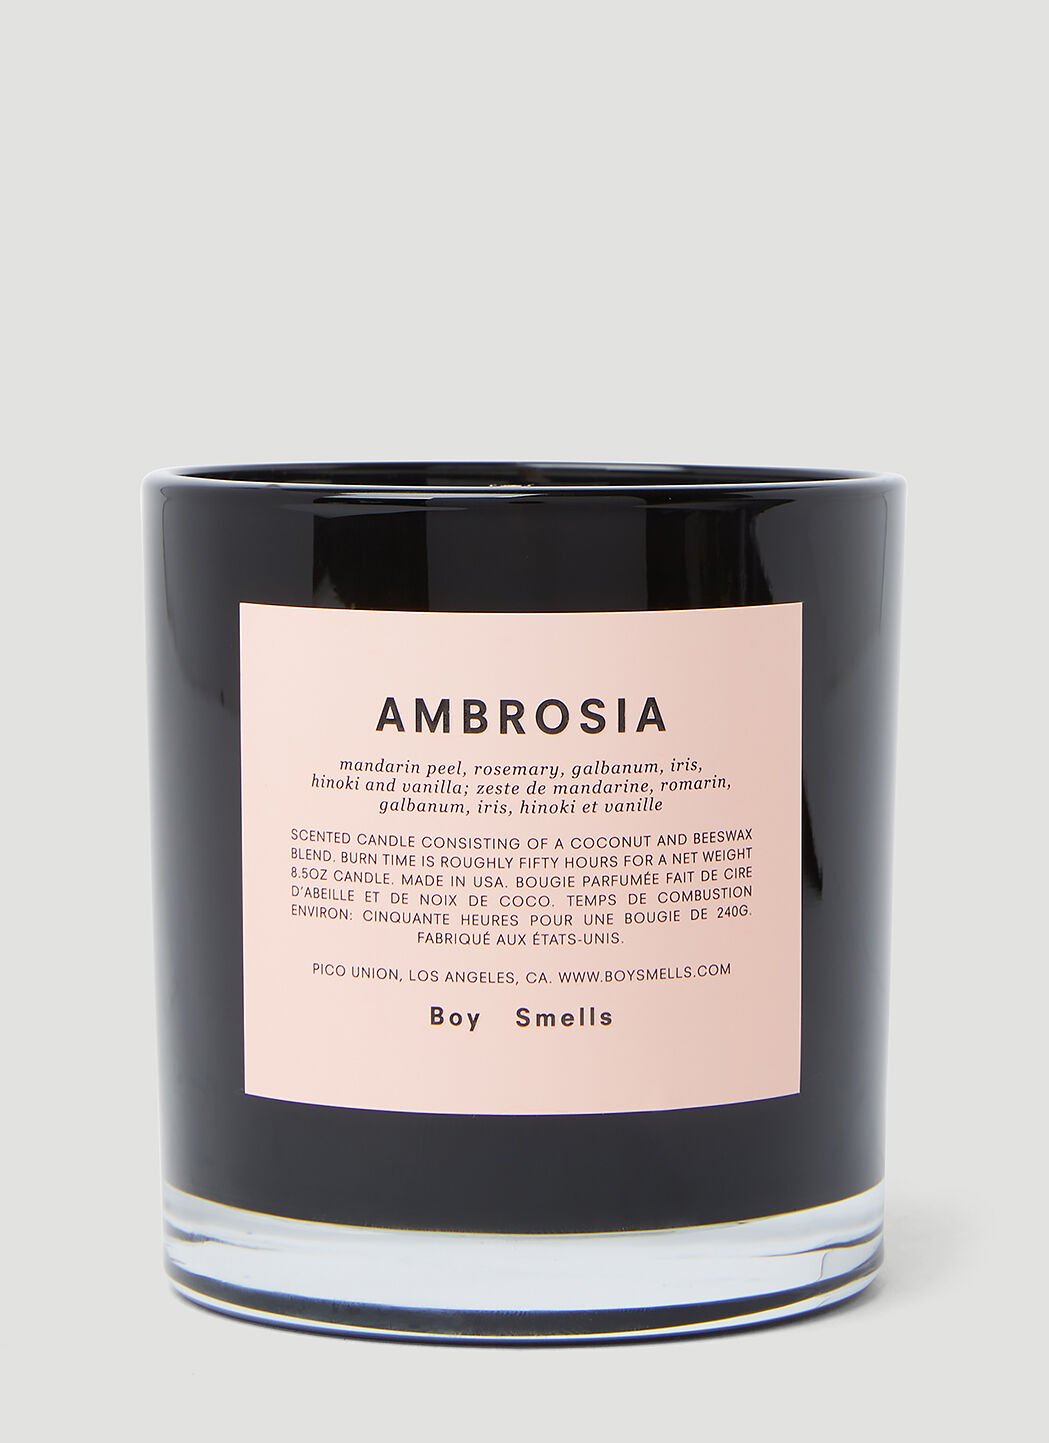 Boy Smells Ambrosia キャンドル Black bys0342001